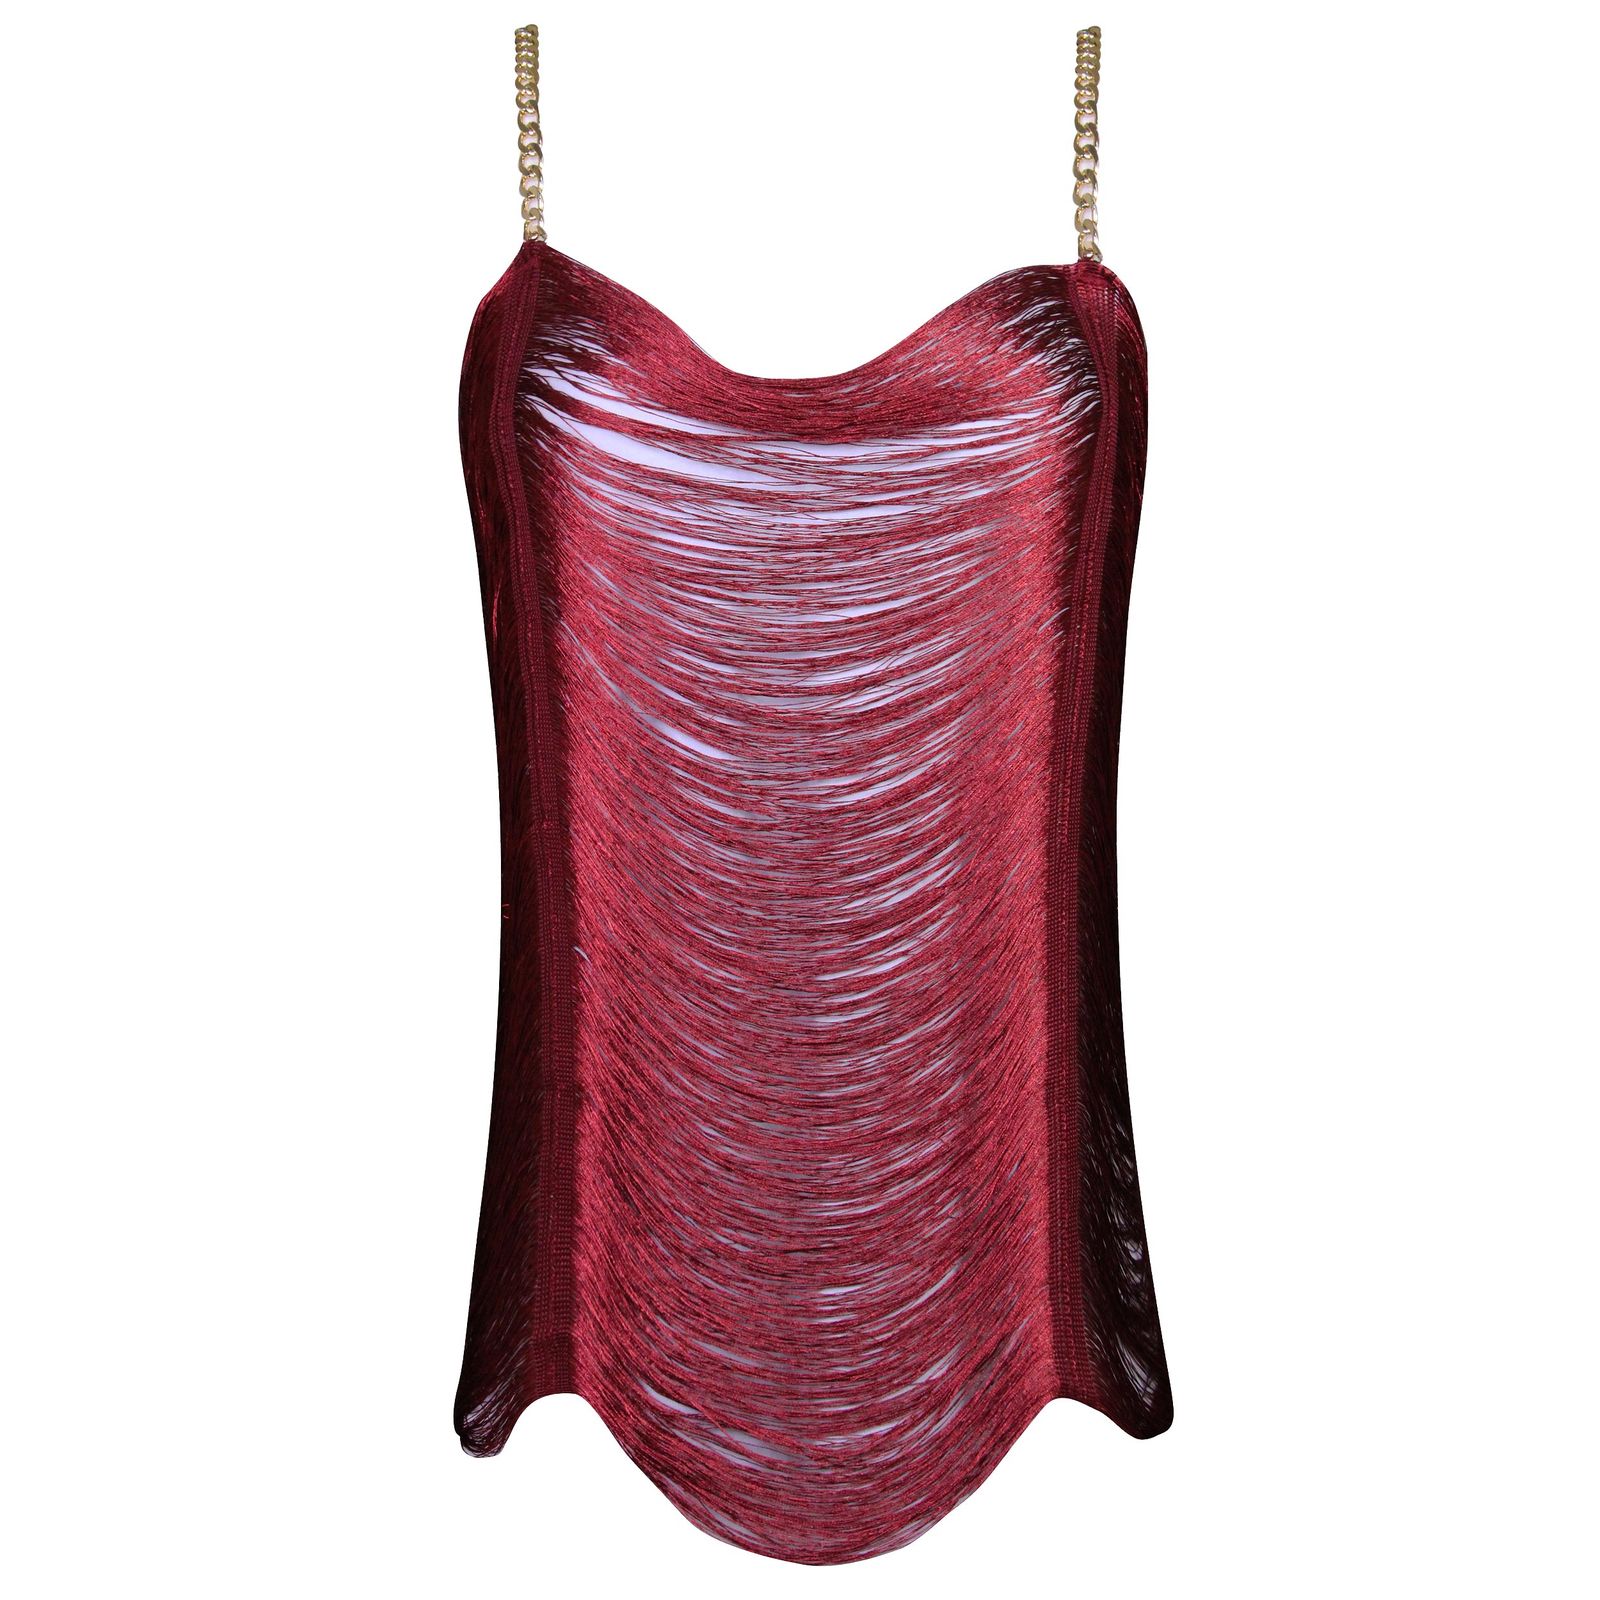 لباس خواب زنانه ماییلدا مدل ریش ریش کد 4709-3002 رنگ زرشکی -  - 1